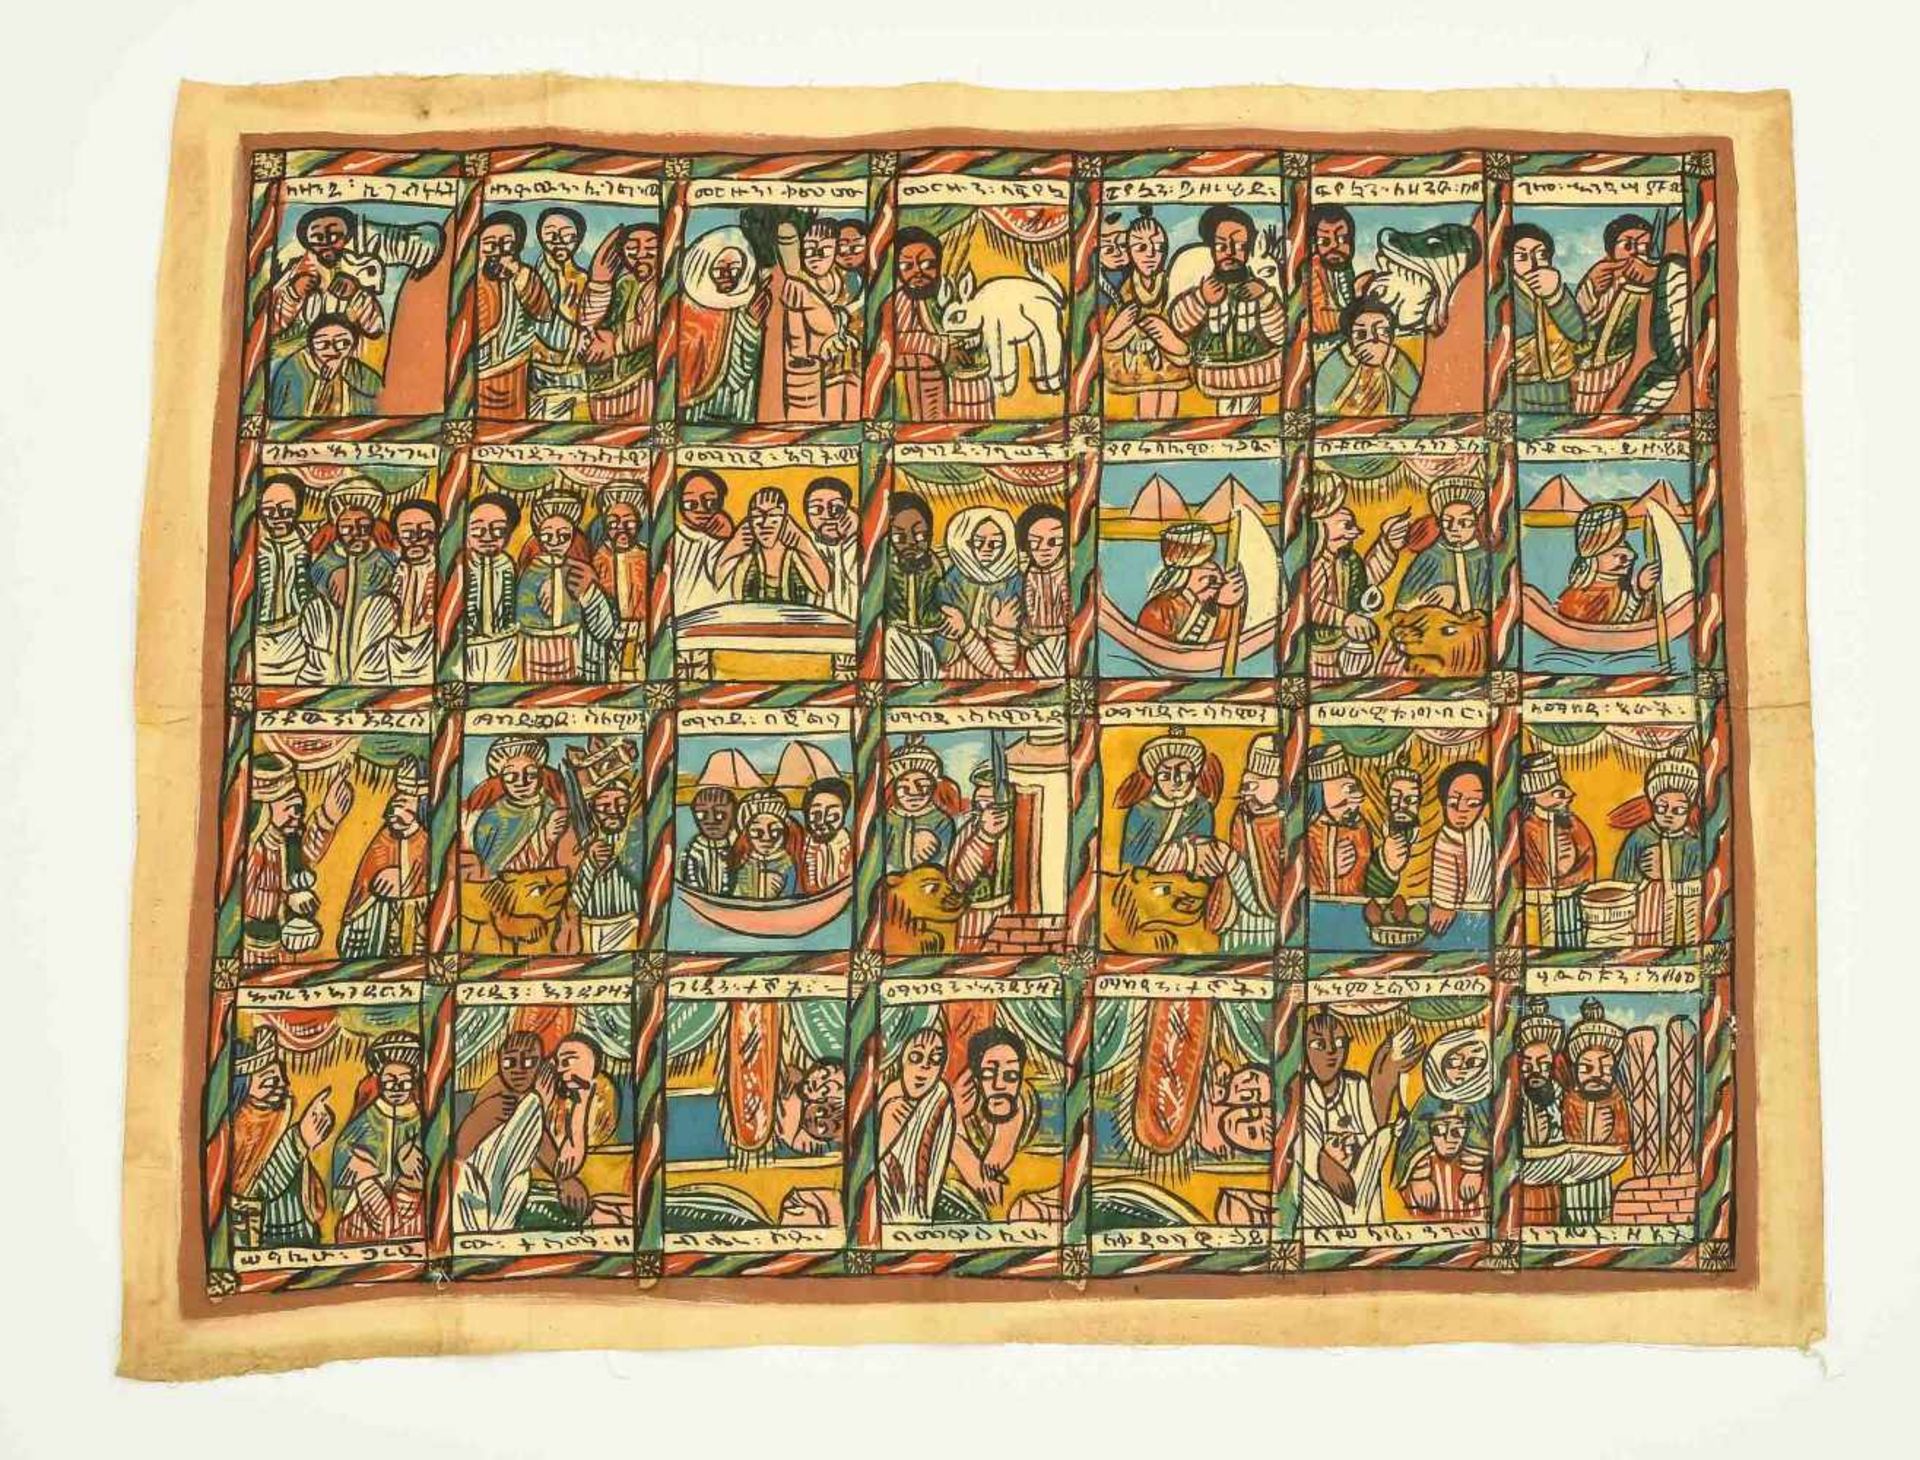 Malerei Äthiopien, 20.Jh. Polychrome Malerei auf Leinwand. In 4 Registern je 7 Szenen aus der